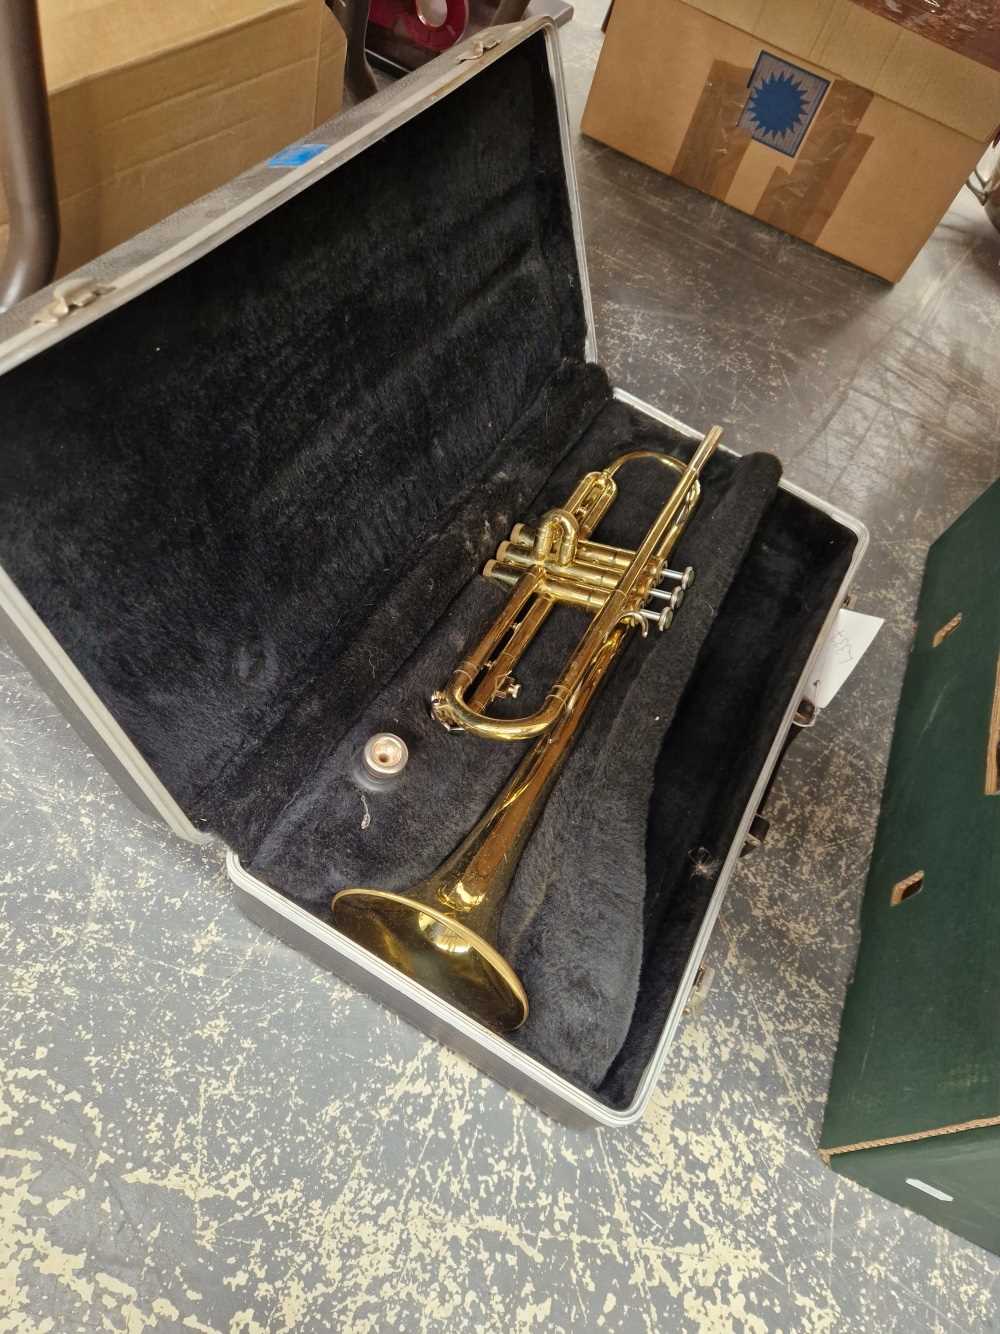 A vintage cased trumpet